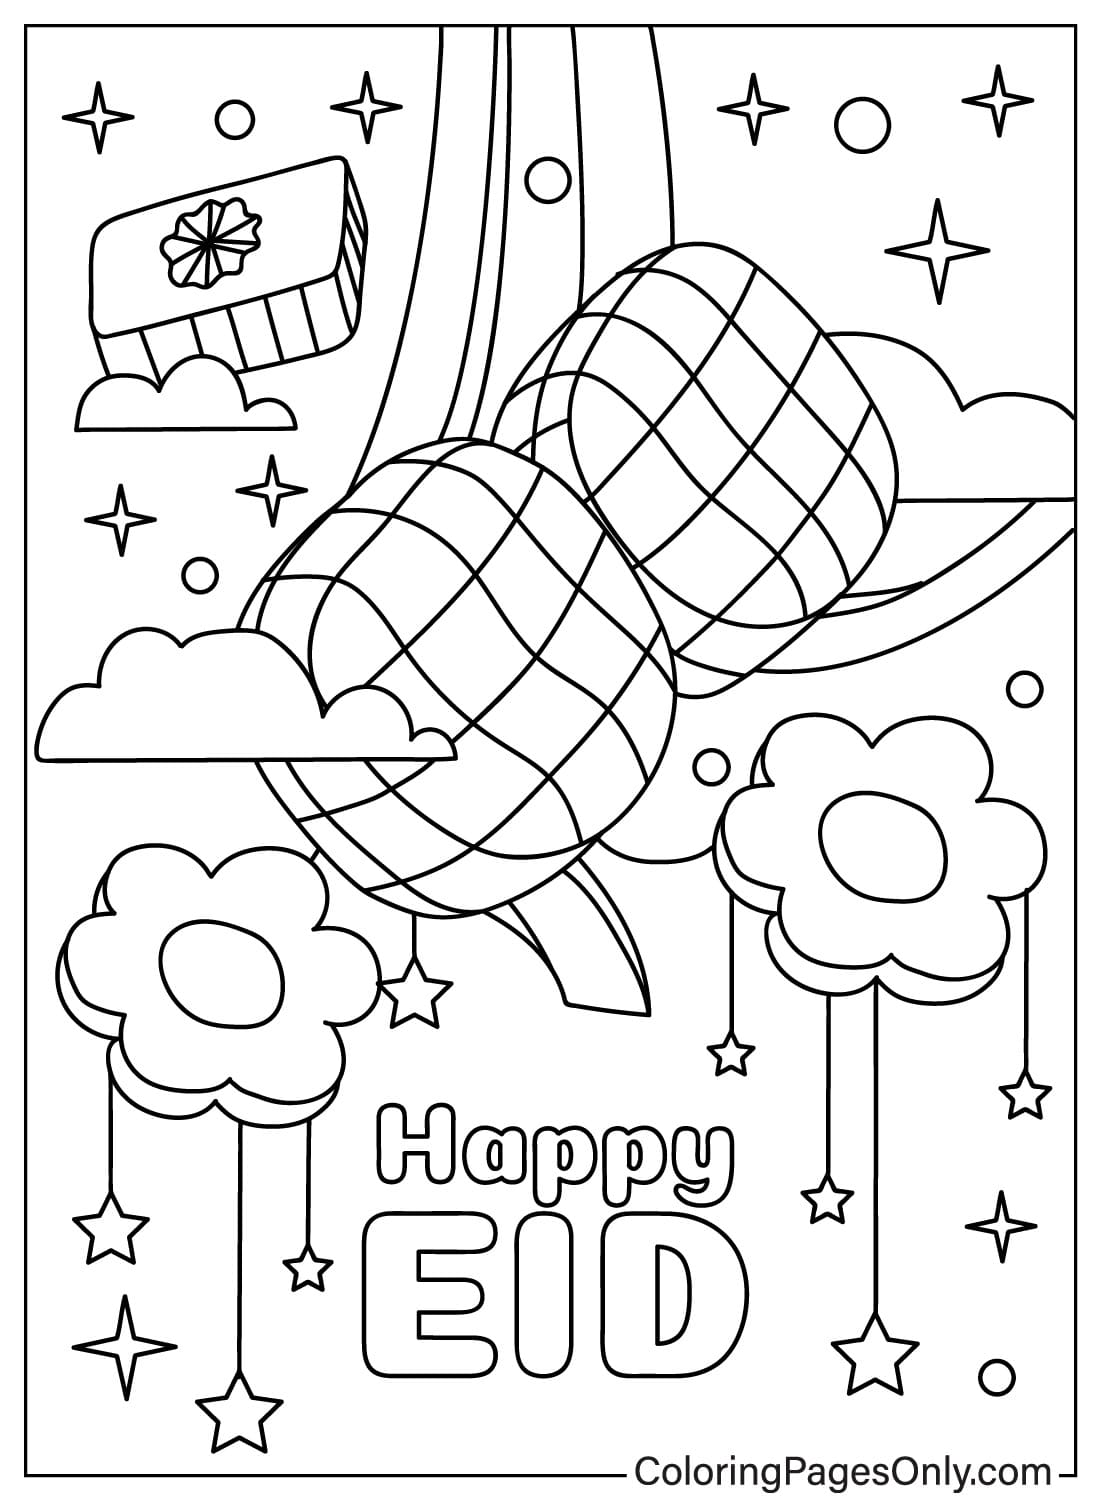 Imágenes de Eid Al-Fitr para colorear de Eid Al-Fitr